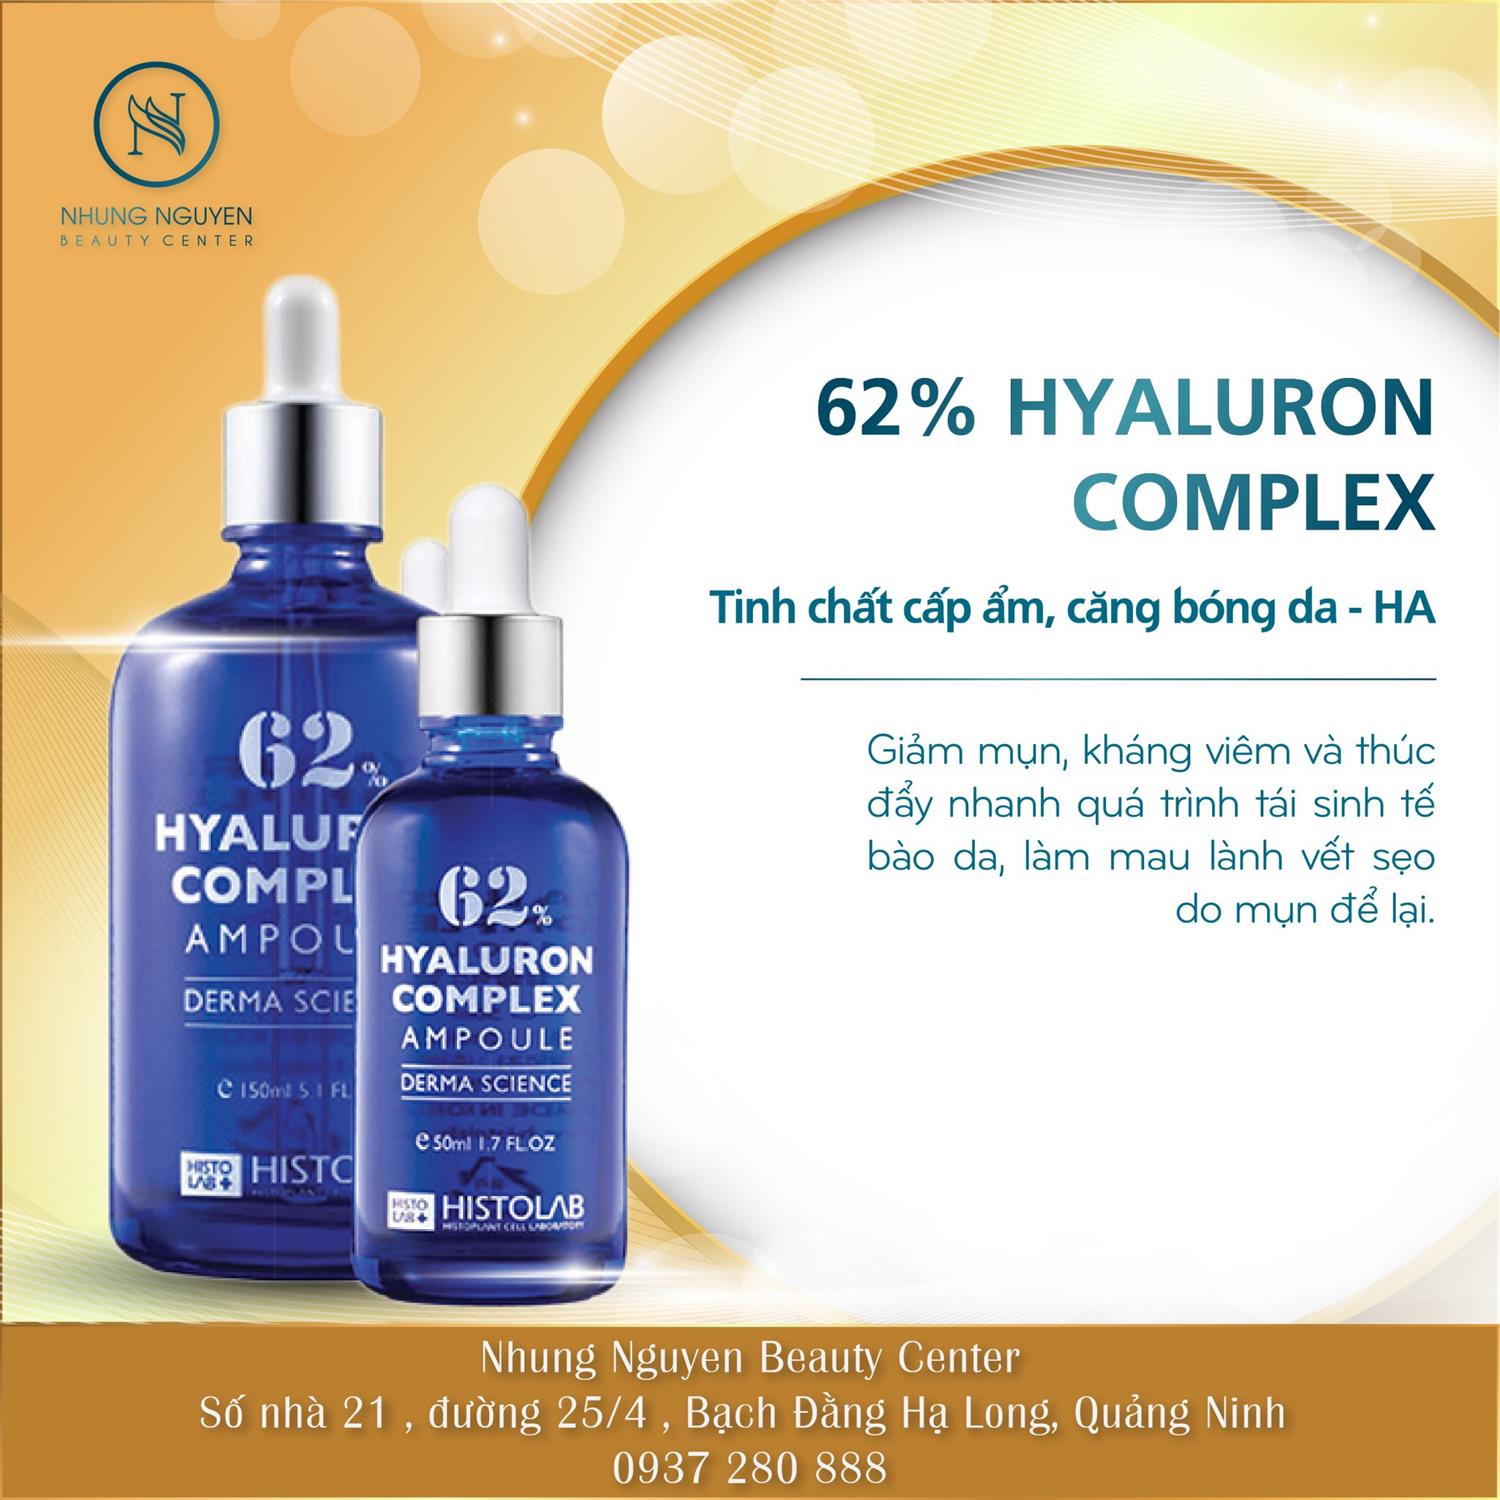 HYALURON COMPLEX AMPOULE 62% 50ML